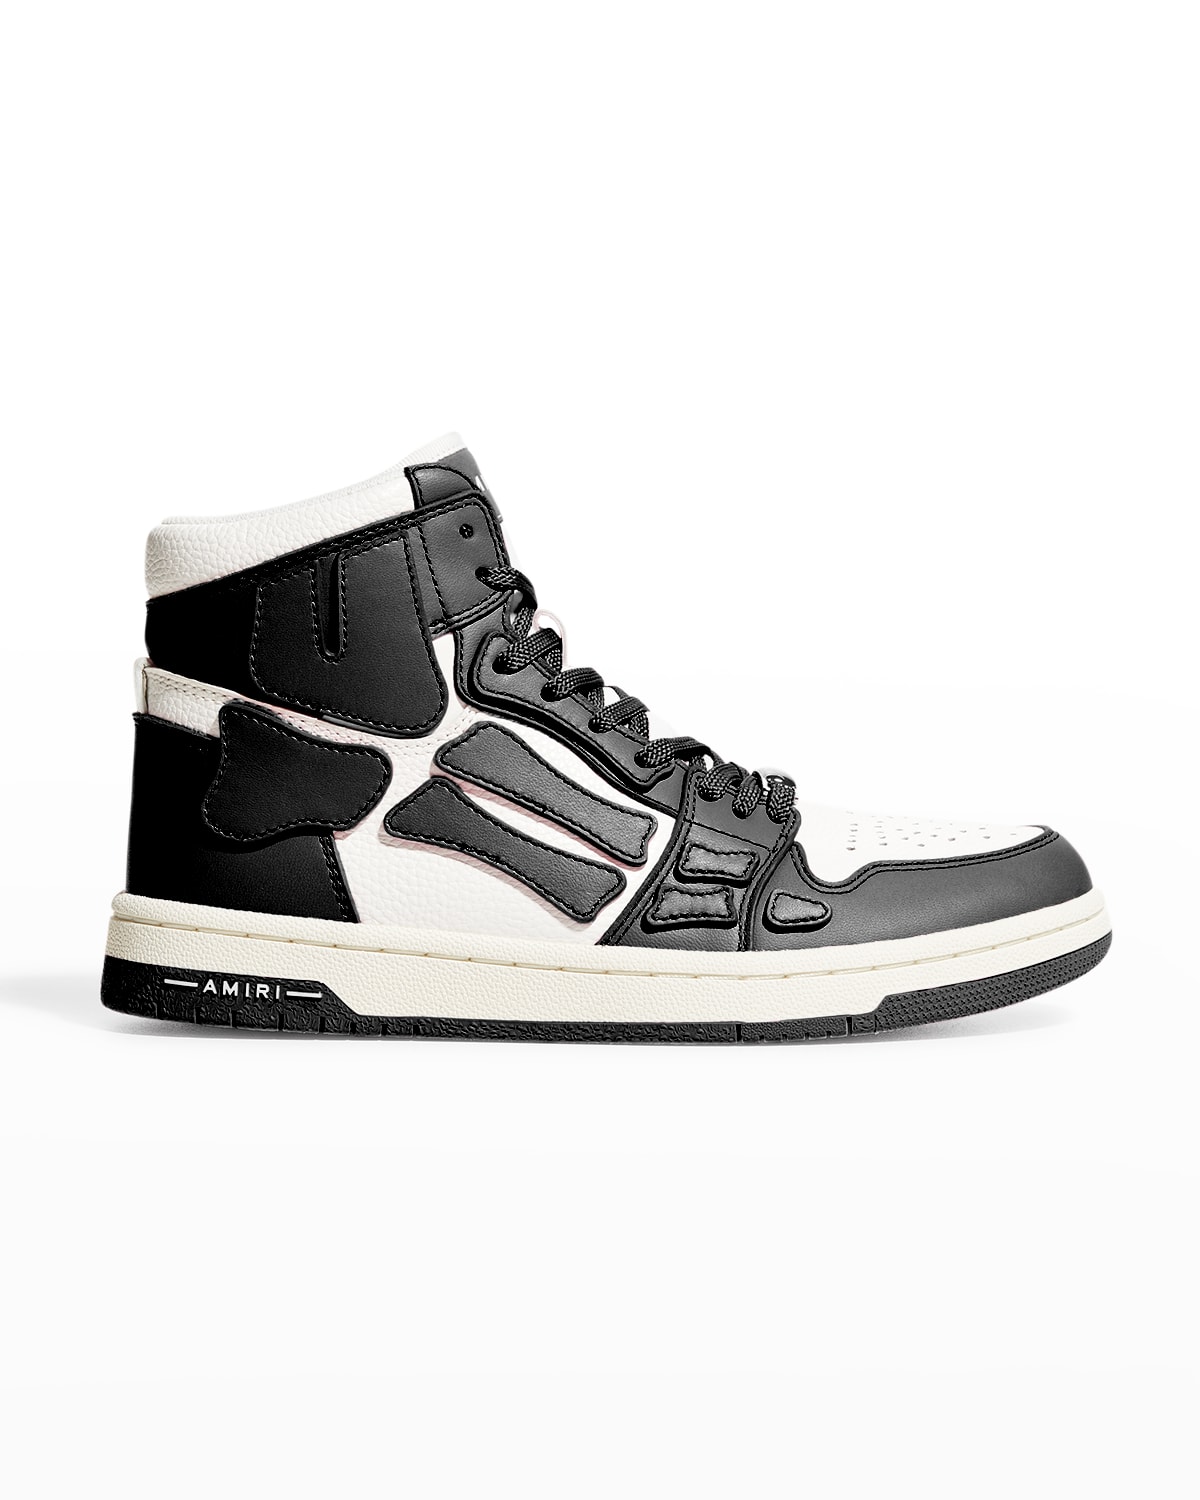 Amiri Skel Bicolor Leather High-Top Sneakers